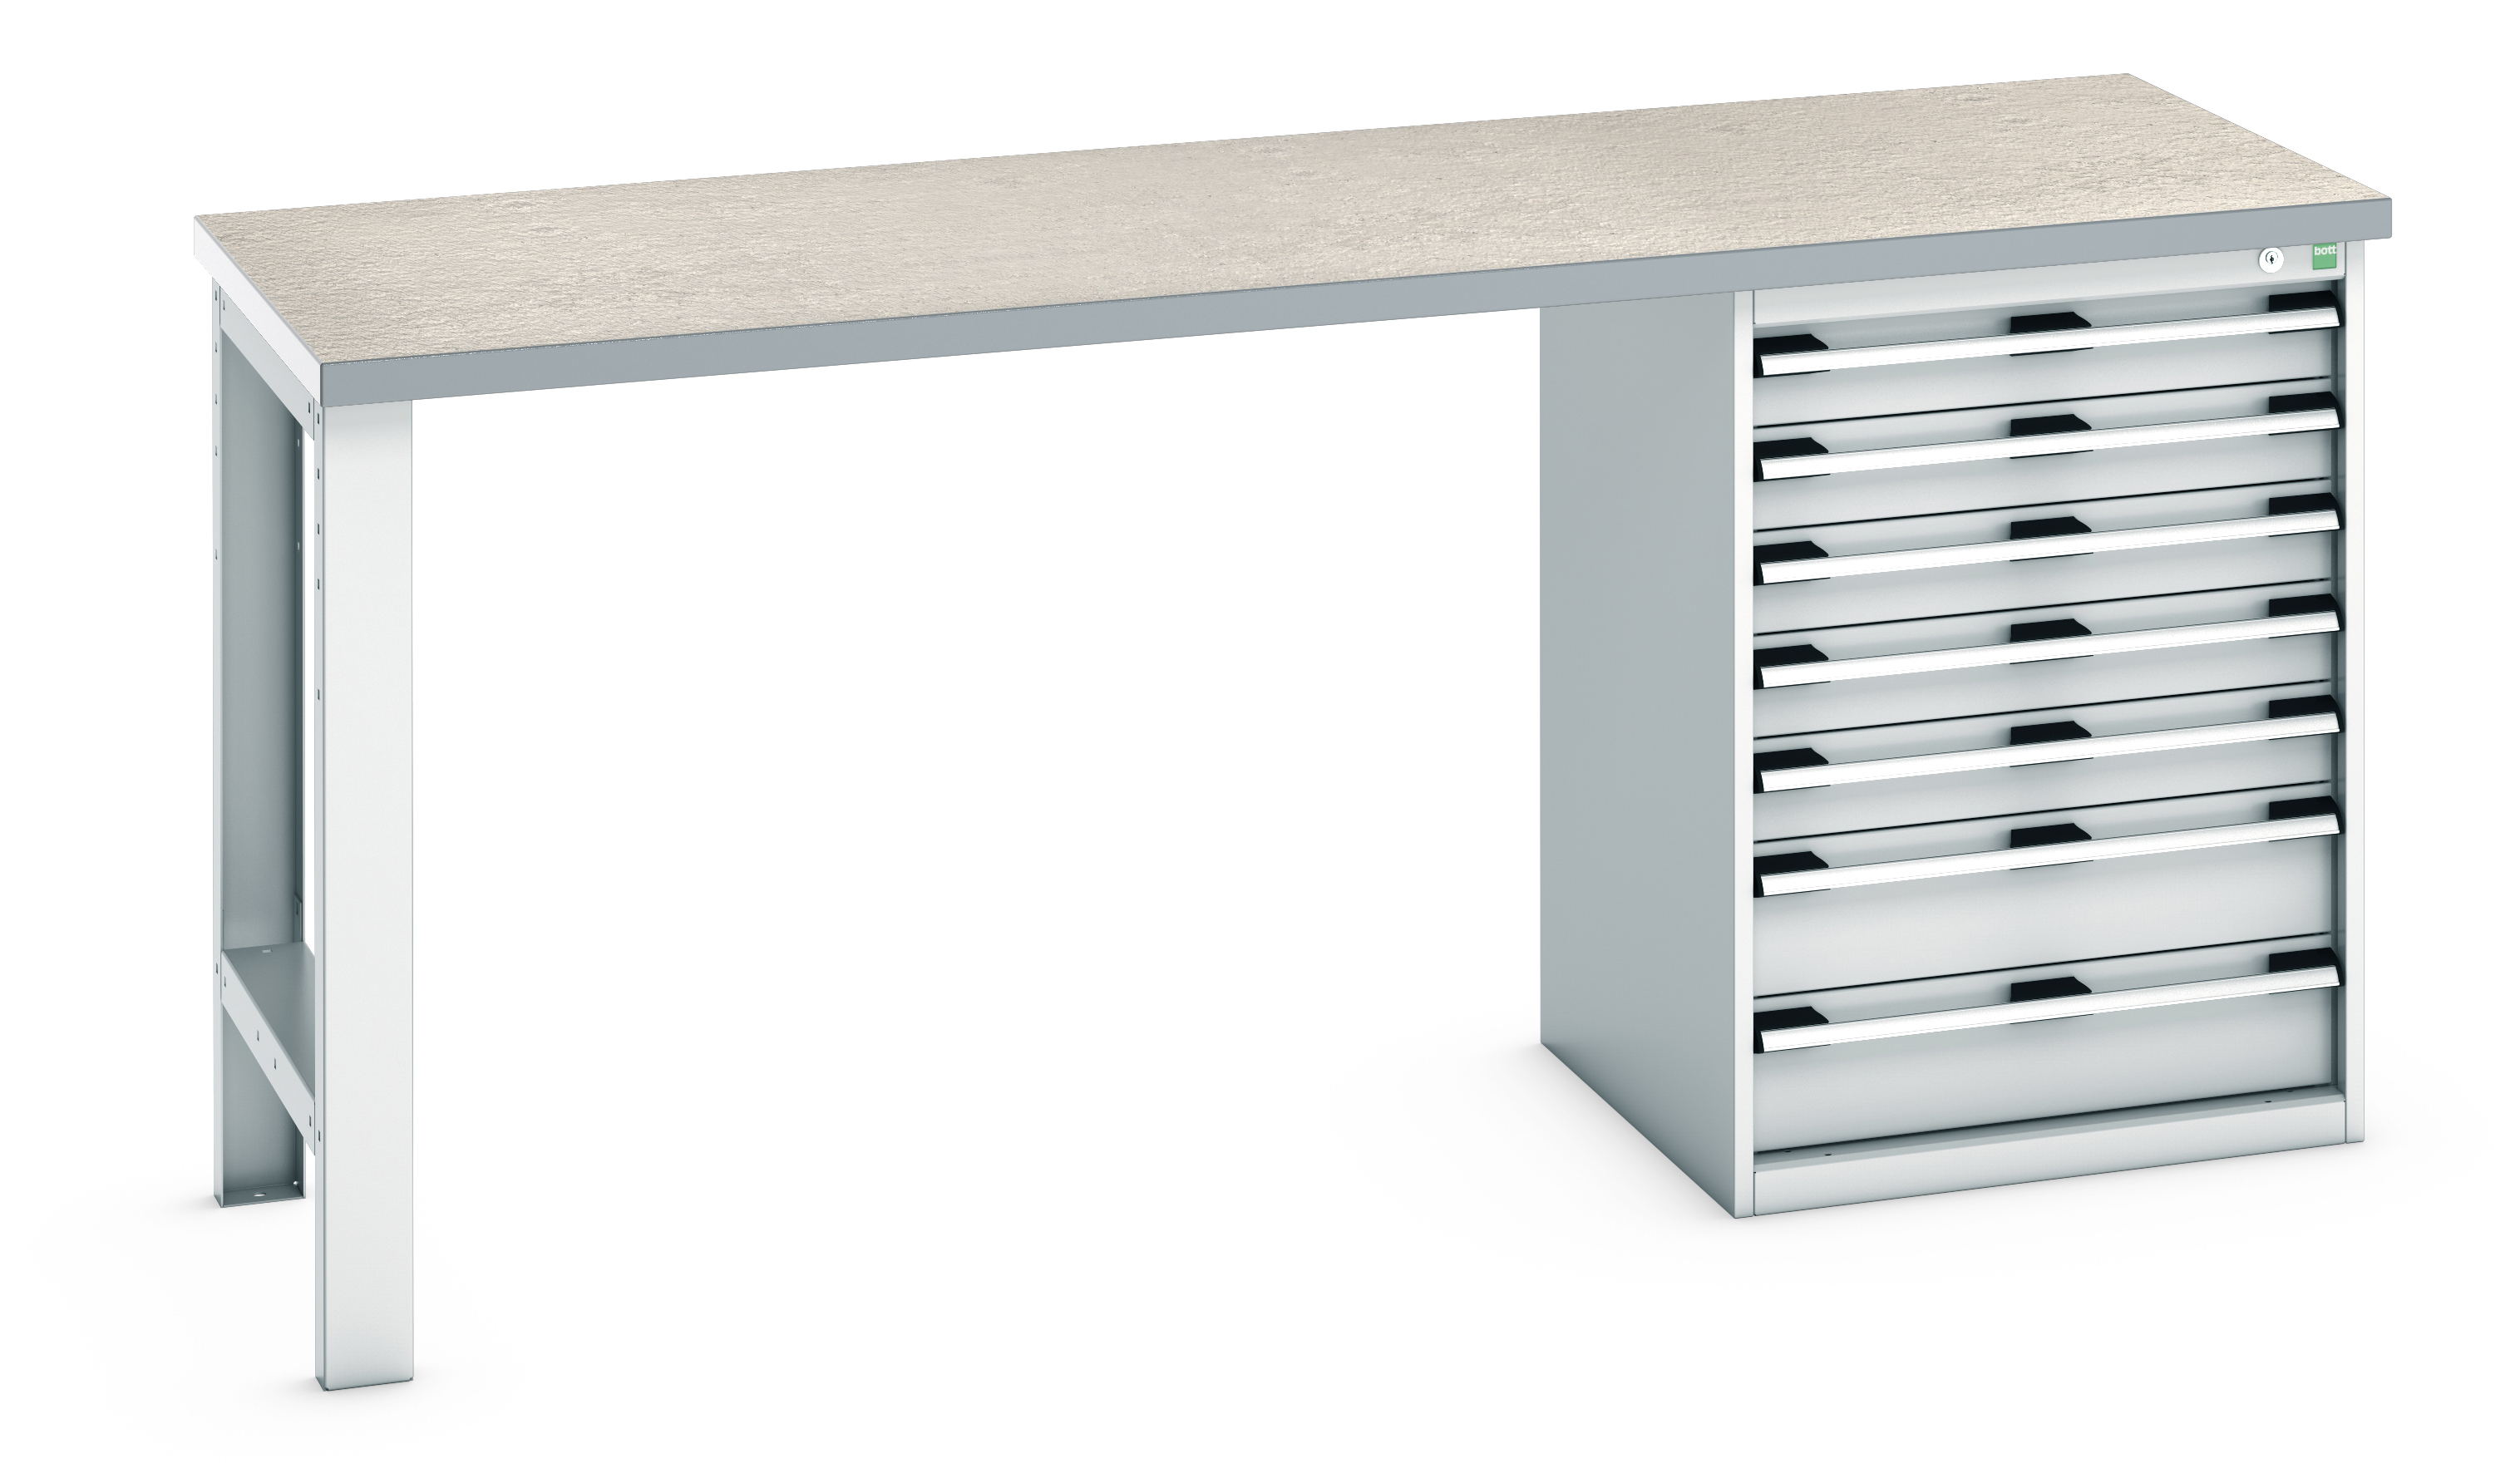 Bott Cubio Pedestal Bench With 7 Drawer Cabinet - 41004122.16V